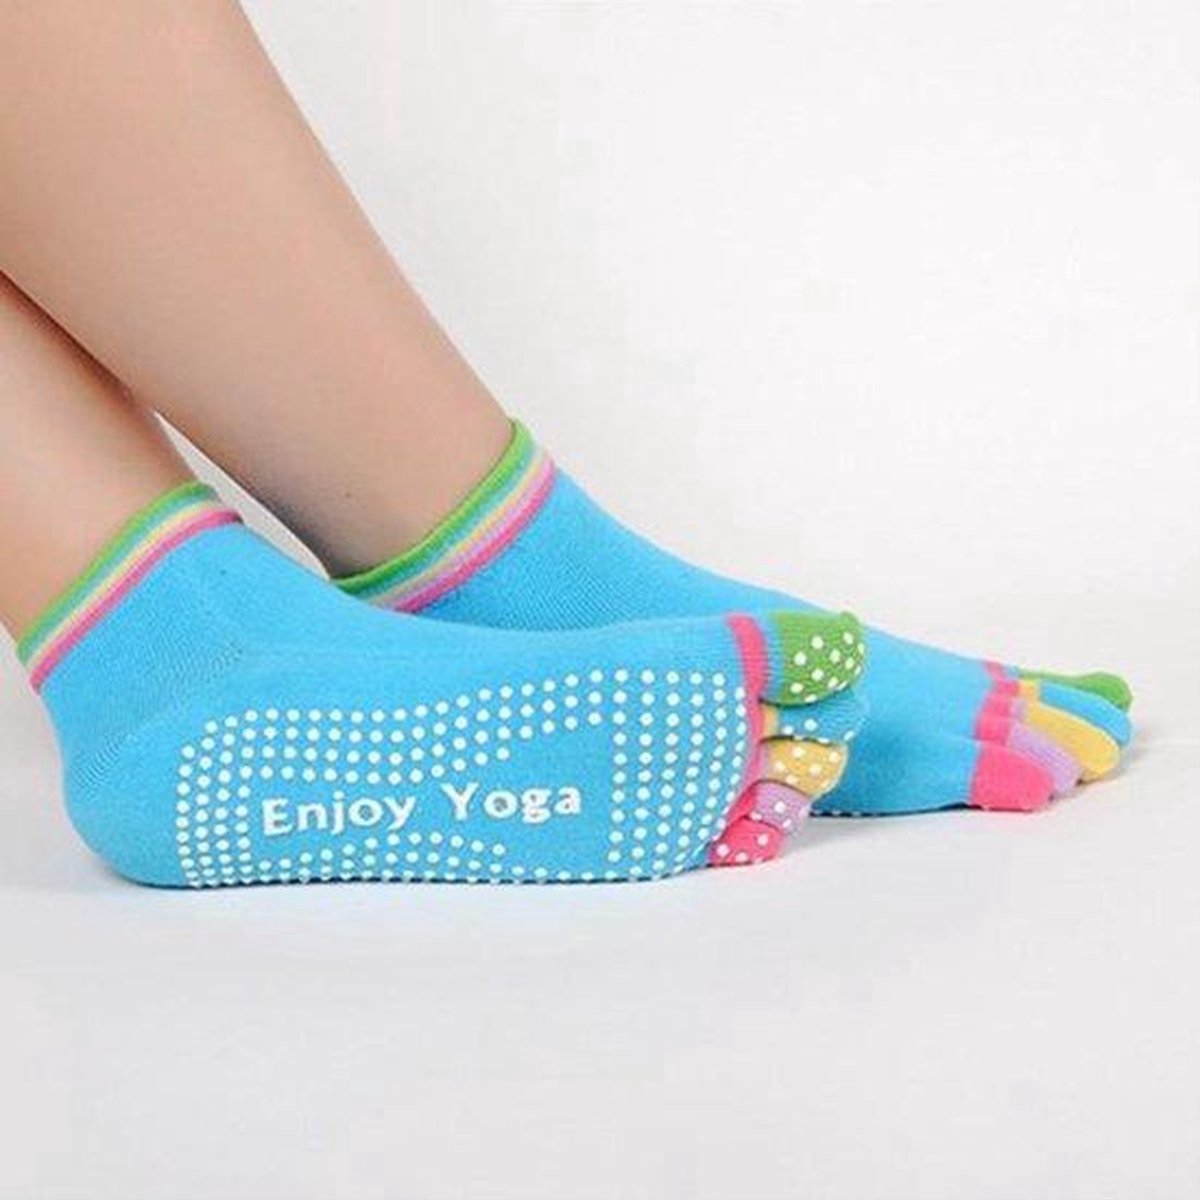 CHPN - Yogasokken - Sportsokken - Yoga - Antislip - Blauw met gekleurde tenen - Vrolijke gekleurde sokken - Sokken - Yogasok - Teensokken - 36-39